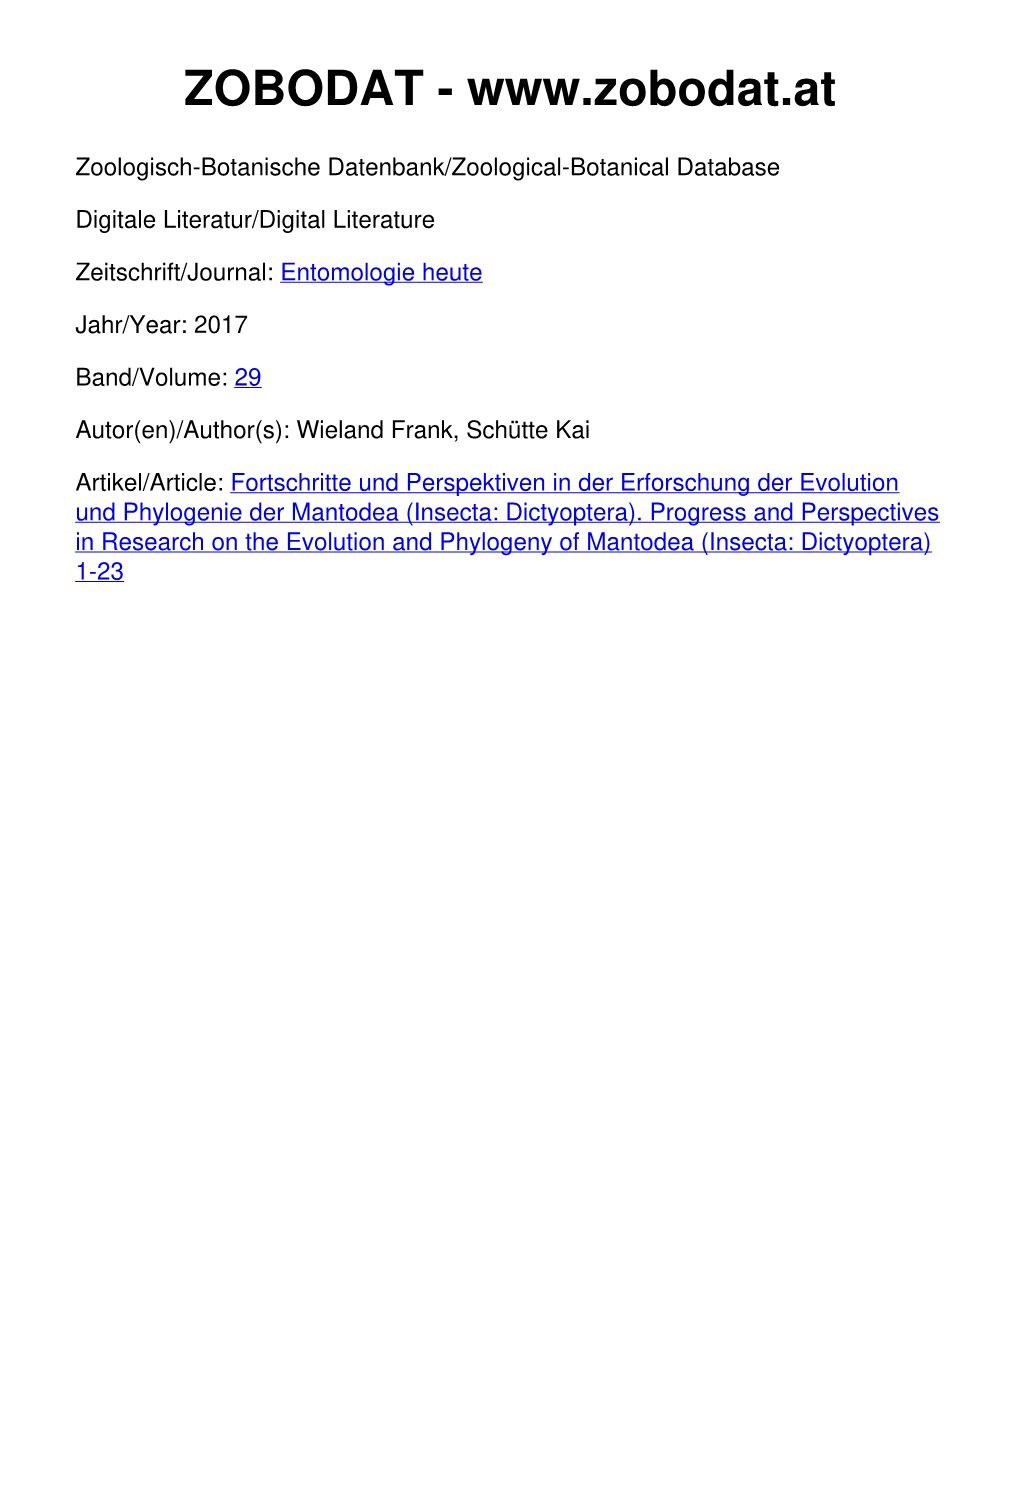 Fortschritte Und Perspektiven in Der Erforschung Der Evolution Und Phylogenie Der Mantodea (Insecta: Dictyoptera)